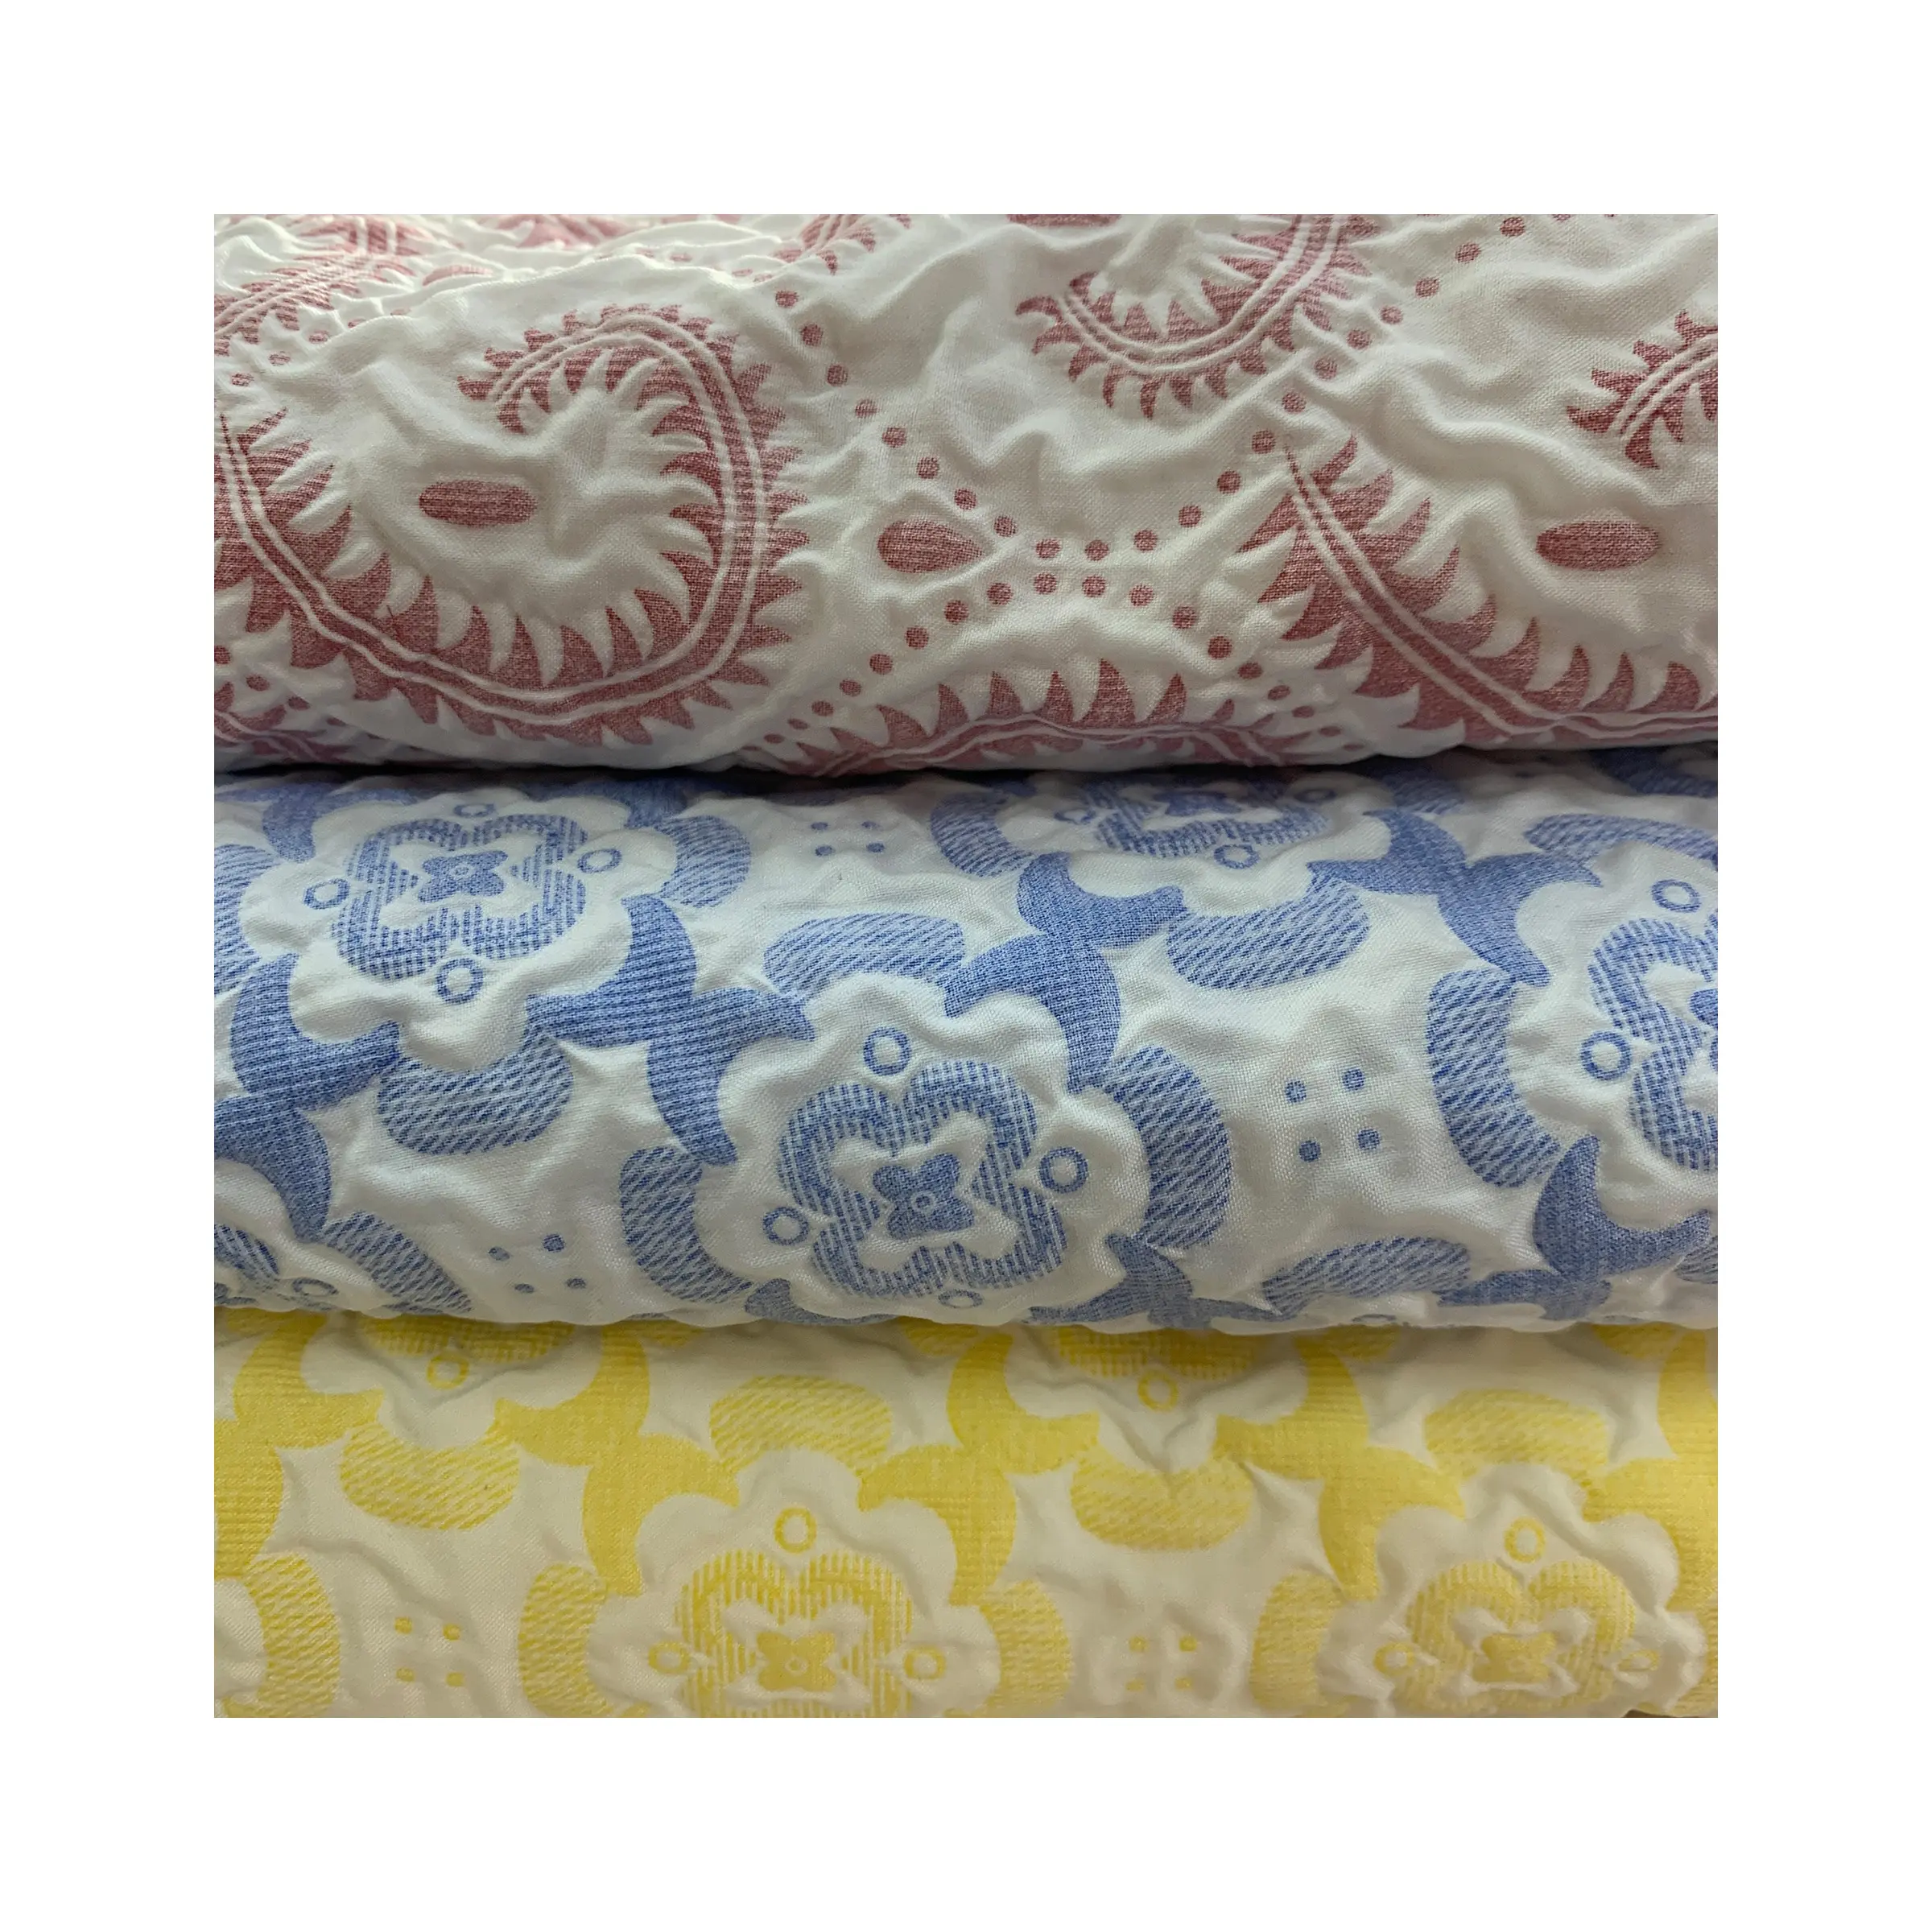 Moquan Quilts toff 100% Polyester wasserdicht Blumenmuster Pongee Stepp stoff für schöne Tasche